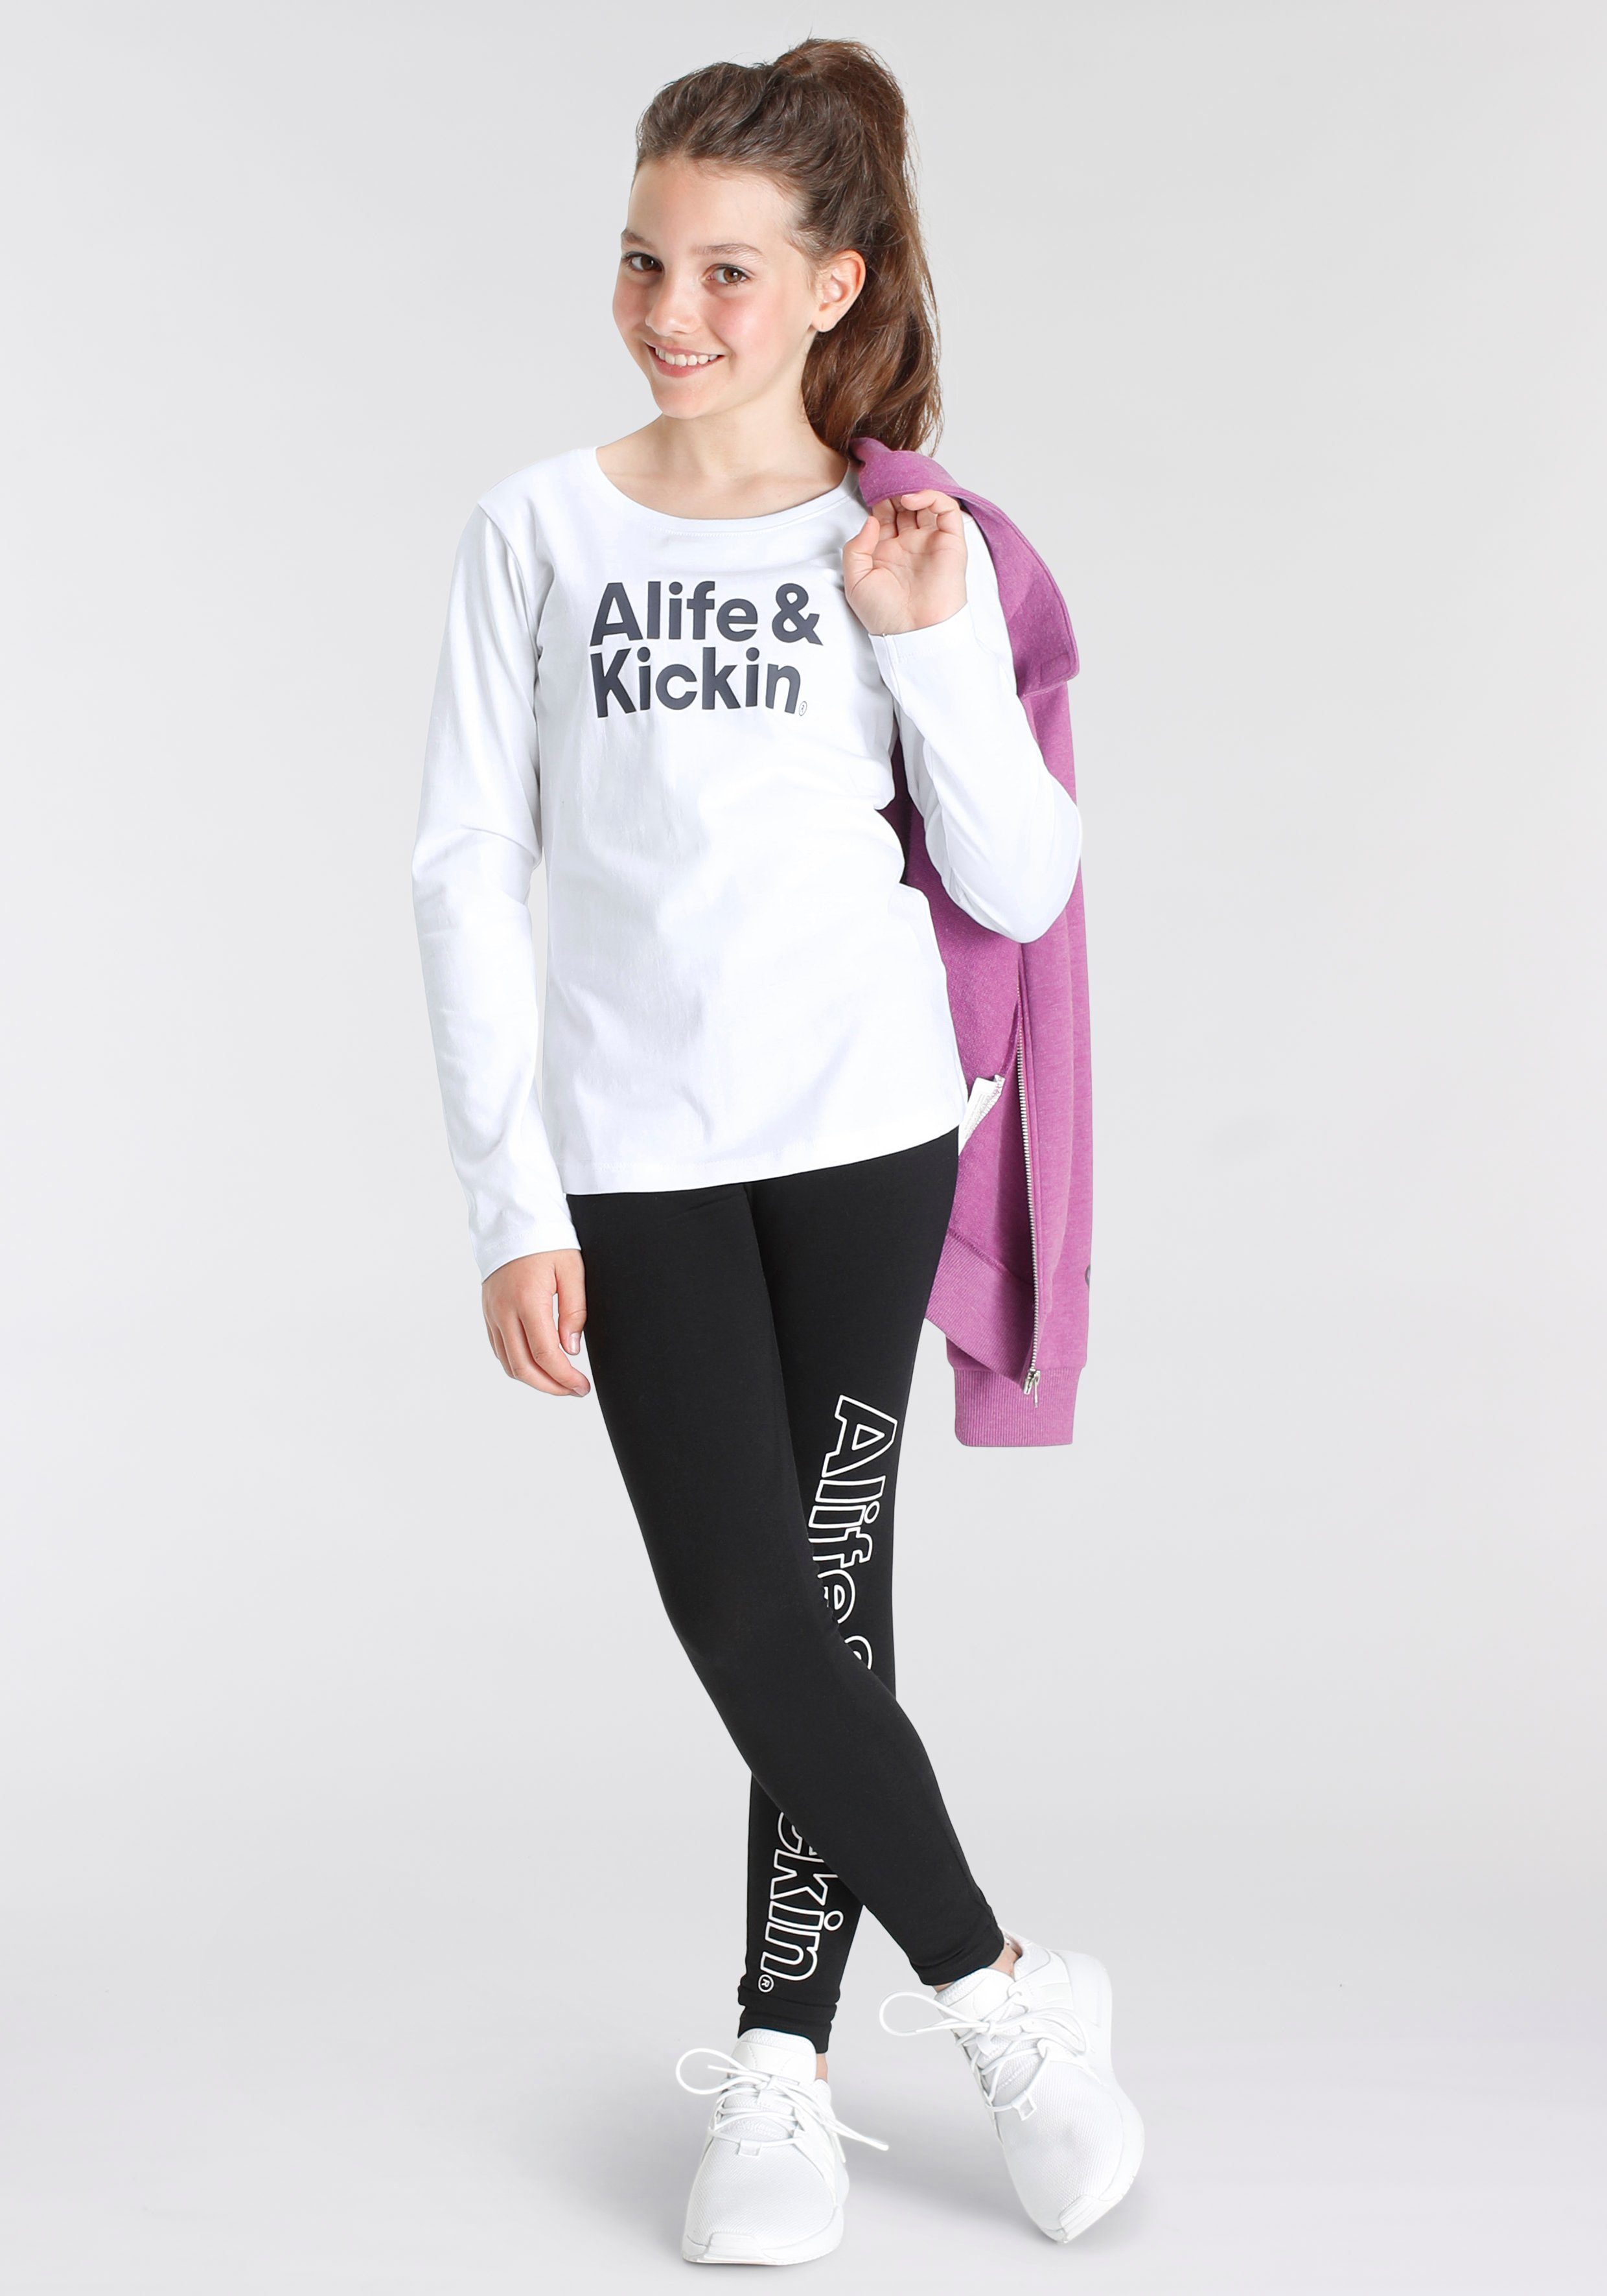 Druck MARKE! Alife Kickin NEUE Kickin mit Logo Alife für & & Kids. Leggings